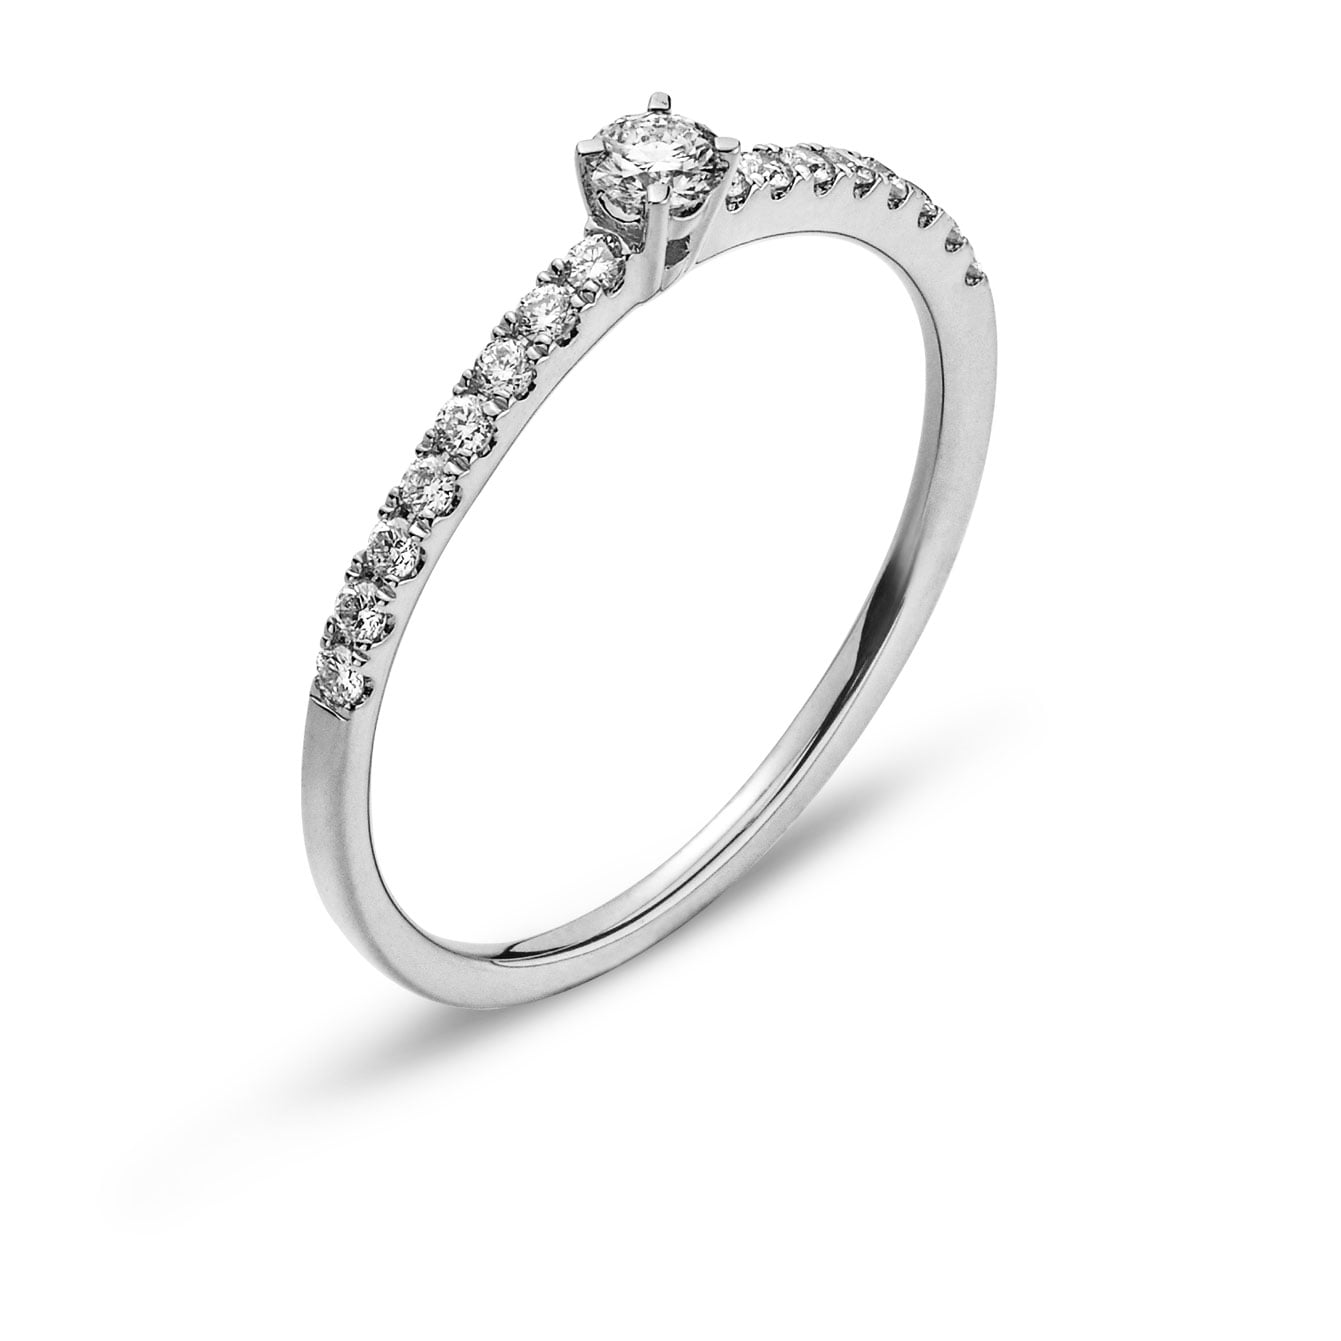 Элегантное кольцо с 16 бриллиантами - уникальное украшение для изысканного стиля